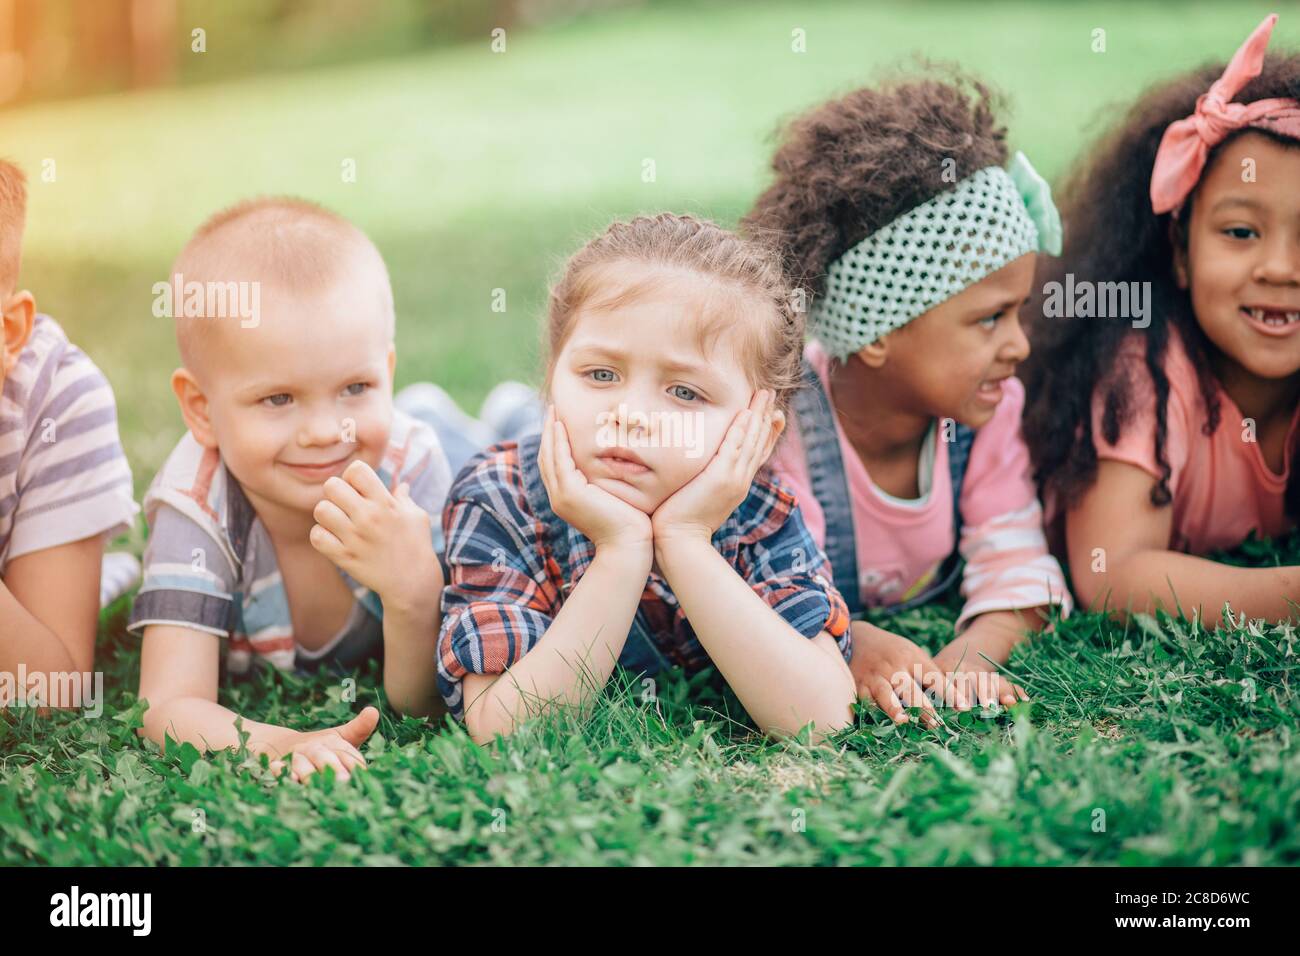 Belle fille couchée sur l'herbe avec ses amis. Le concept de l'enfance, de l'amitié et de la communication interculturelle. Banque D'Images